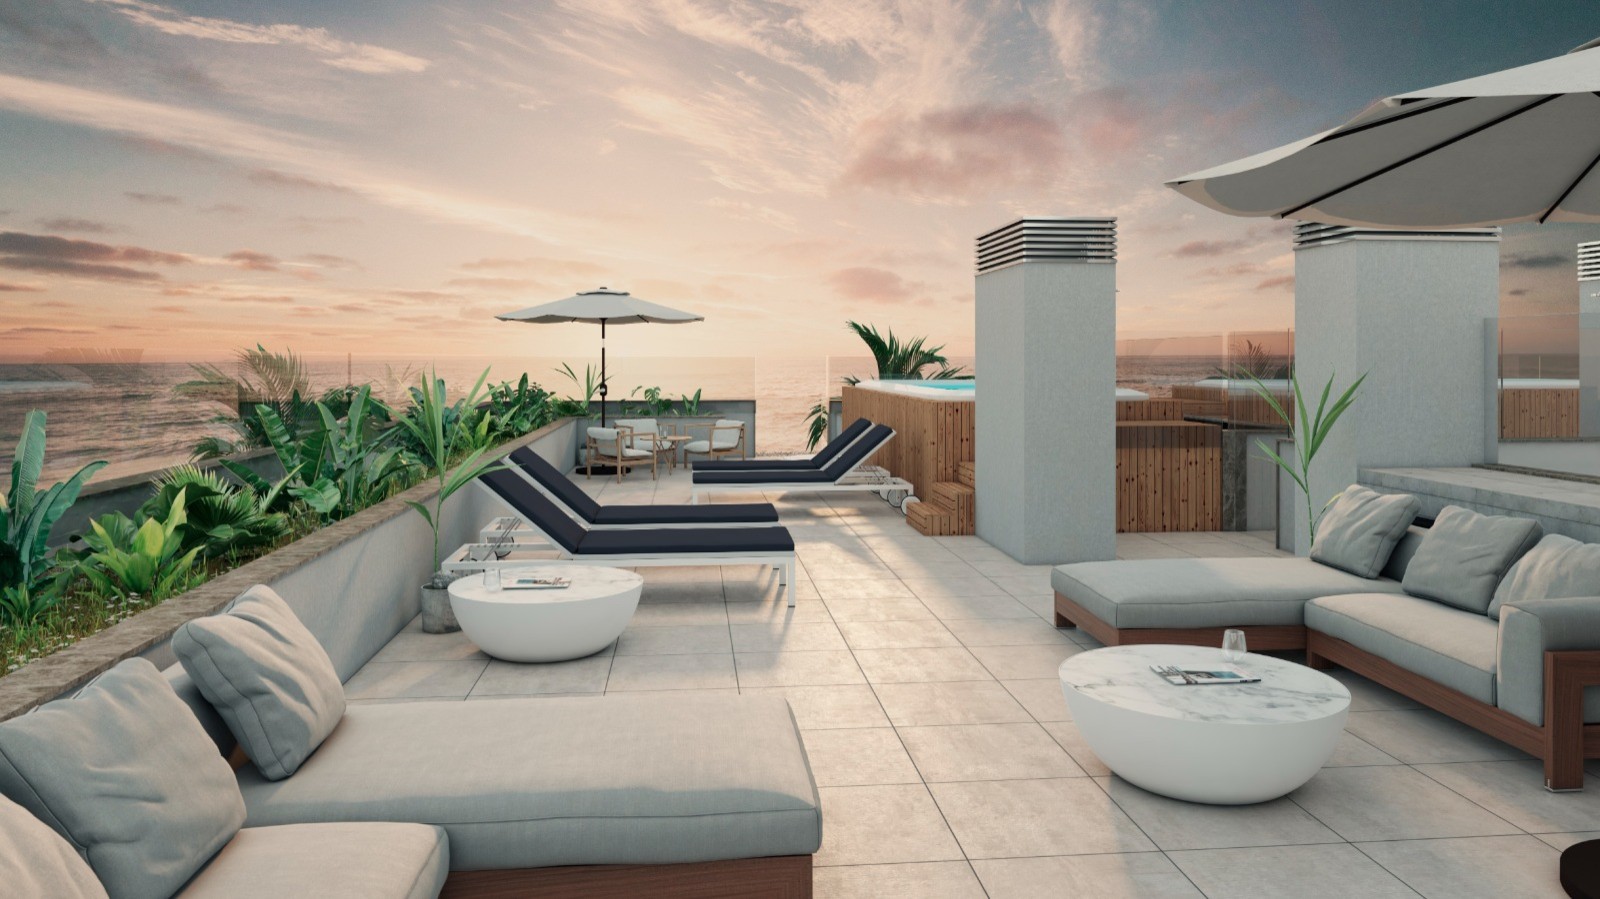 Apartamento T2 com vista de mar, terraço e piscina, para venda, Gaia, Portugal_250374